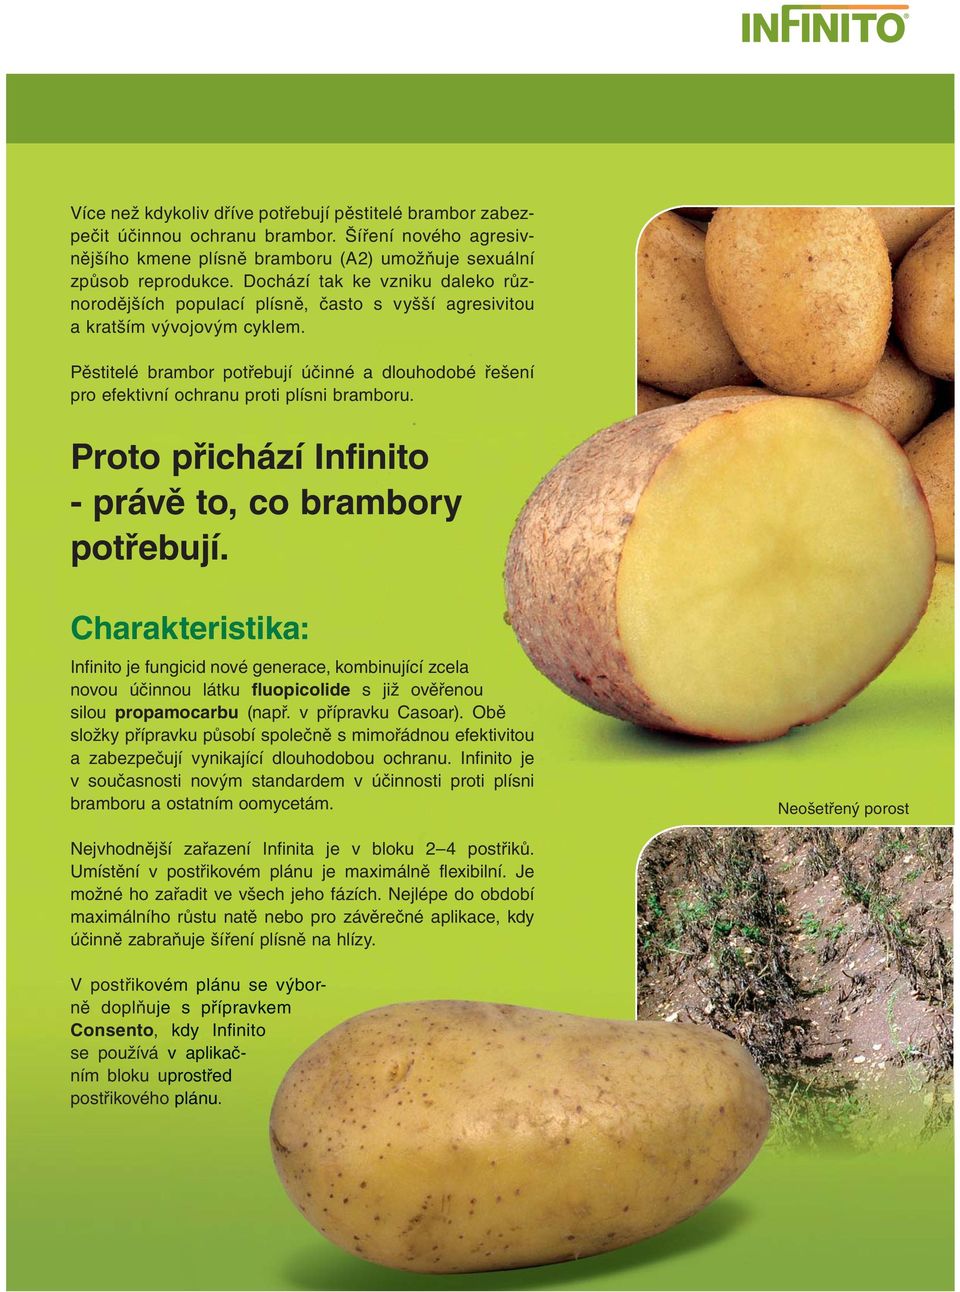 Pěstitelé brambor potřebují účinné a dlouhodobé řešení pro efektivní ochranu proti plísni bramboru. Proto přichází Infinito - právě to, co brambory potřebují.